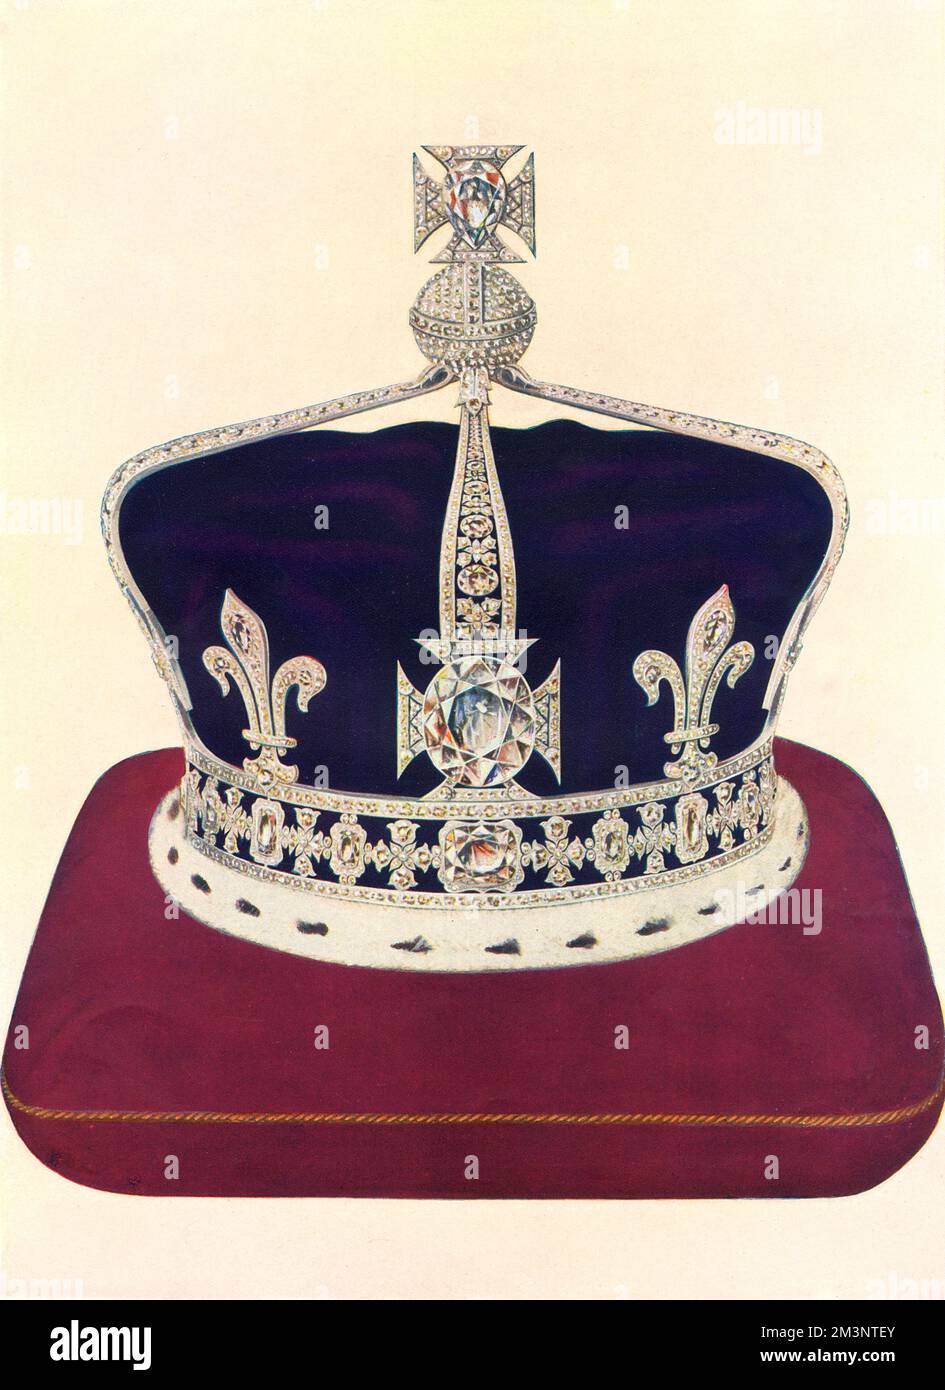 La corona per la regina Elisabetta, consorte di re Giorgio VI, da indossare al 1937 incoronazione basata su un circleto vittoriano e compreso il diamante Koh-i-Noor. Realizzato da Garrard, è stato il primo ad essere montato interamente in platino. La fondazione è un circlet utilizzato dalla regina Vittoria per le funzioni di Corte e il Koh-i-Noor (visto nella figura) è posto nella croce-patee anteriore che da esso scaturisce. Un brillante drop dal Tesoro di Lahore, presentato alla regina Vittoria dalla Compagnia delle Indie Orientali, è ambientato nel più alto cross-patee. Questa gemma è stata indossata dalla regina Vittoria come un pendente ad una collana di diamante Foto Stock